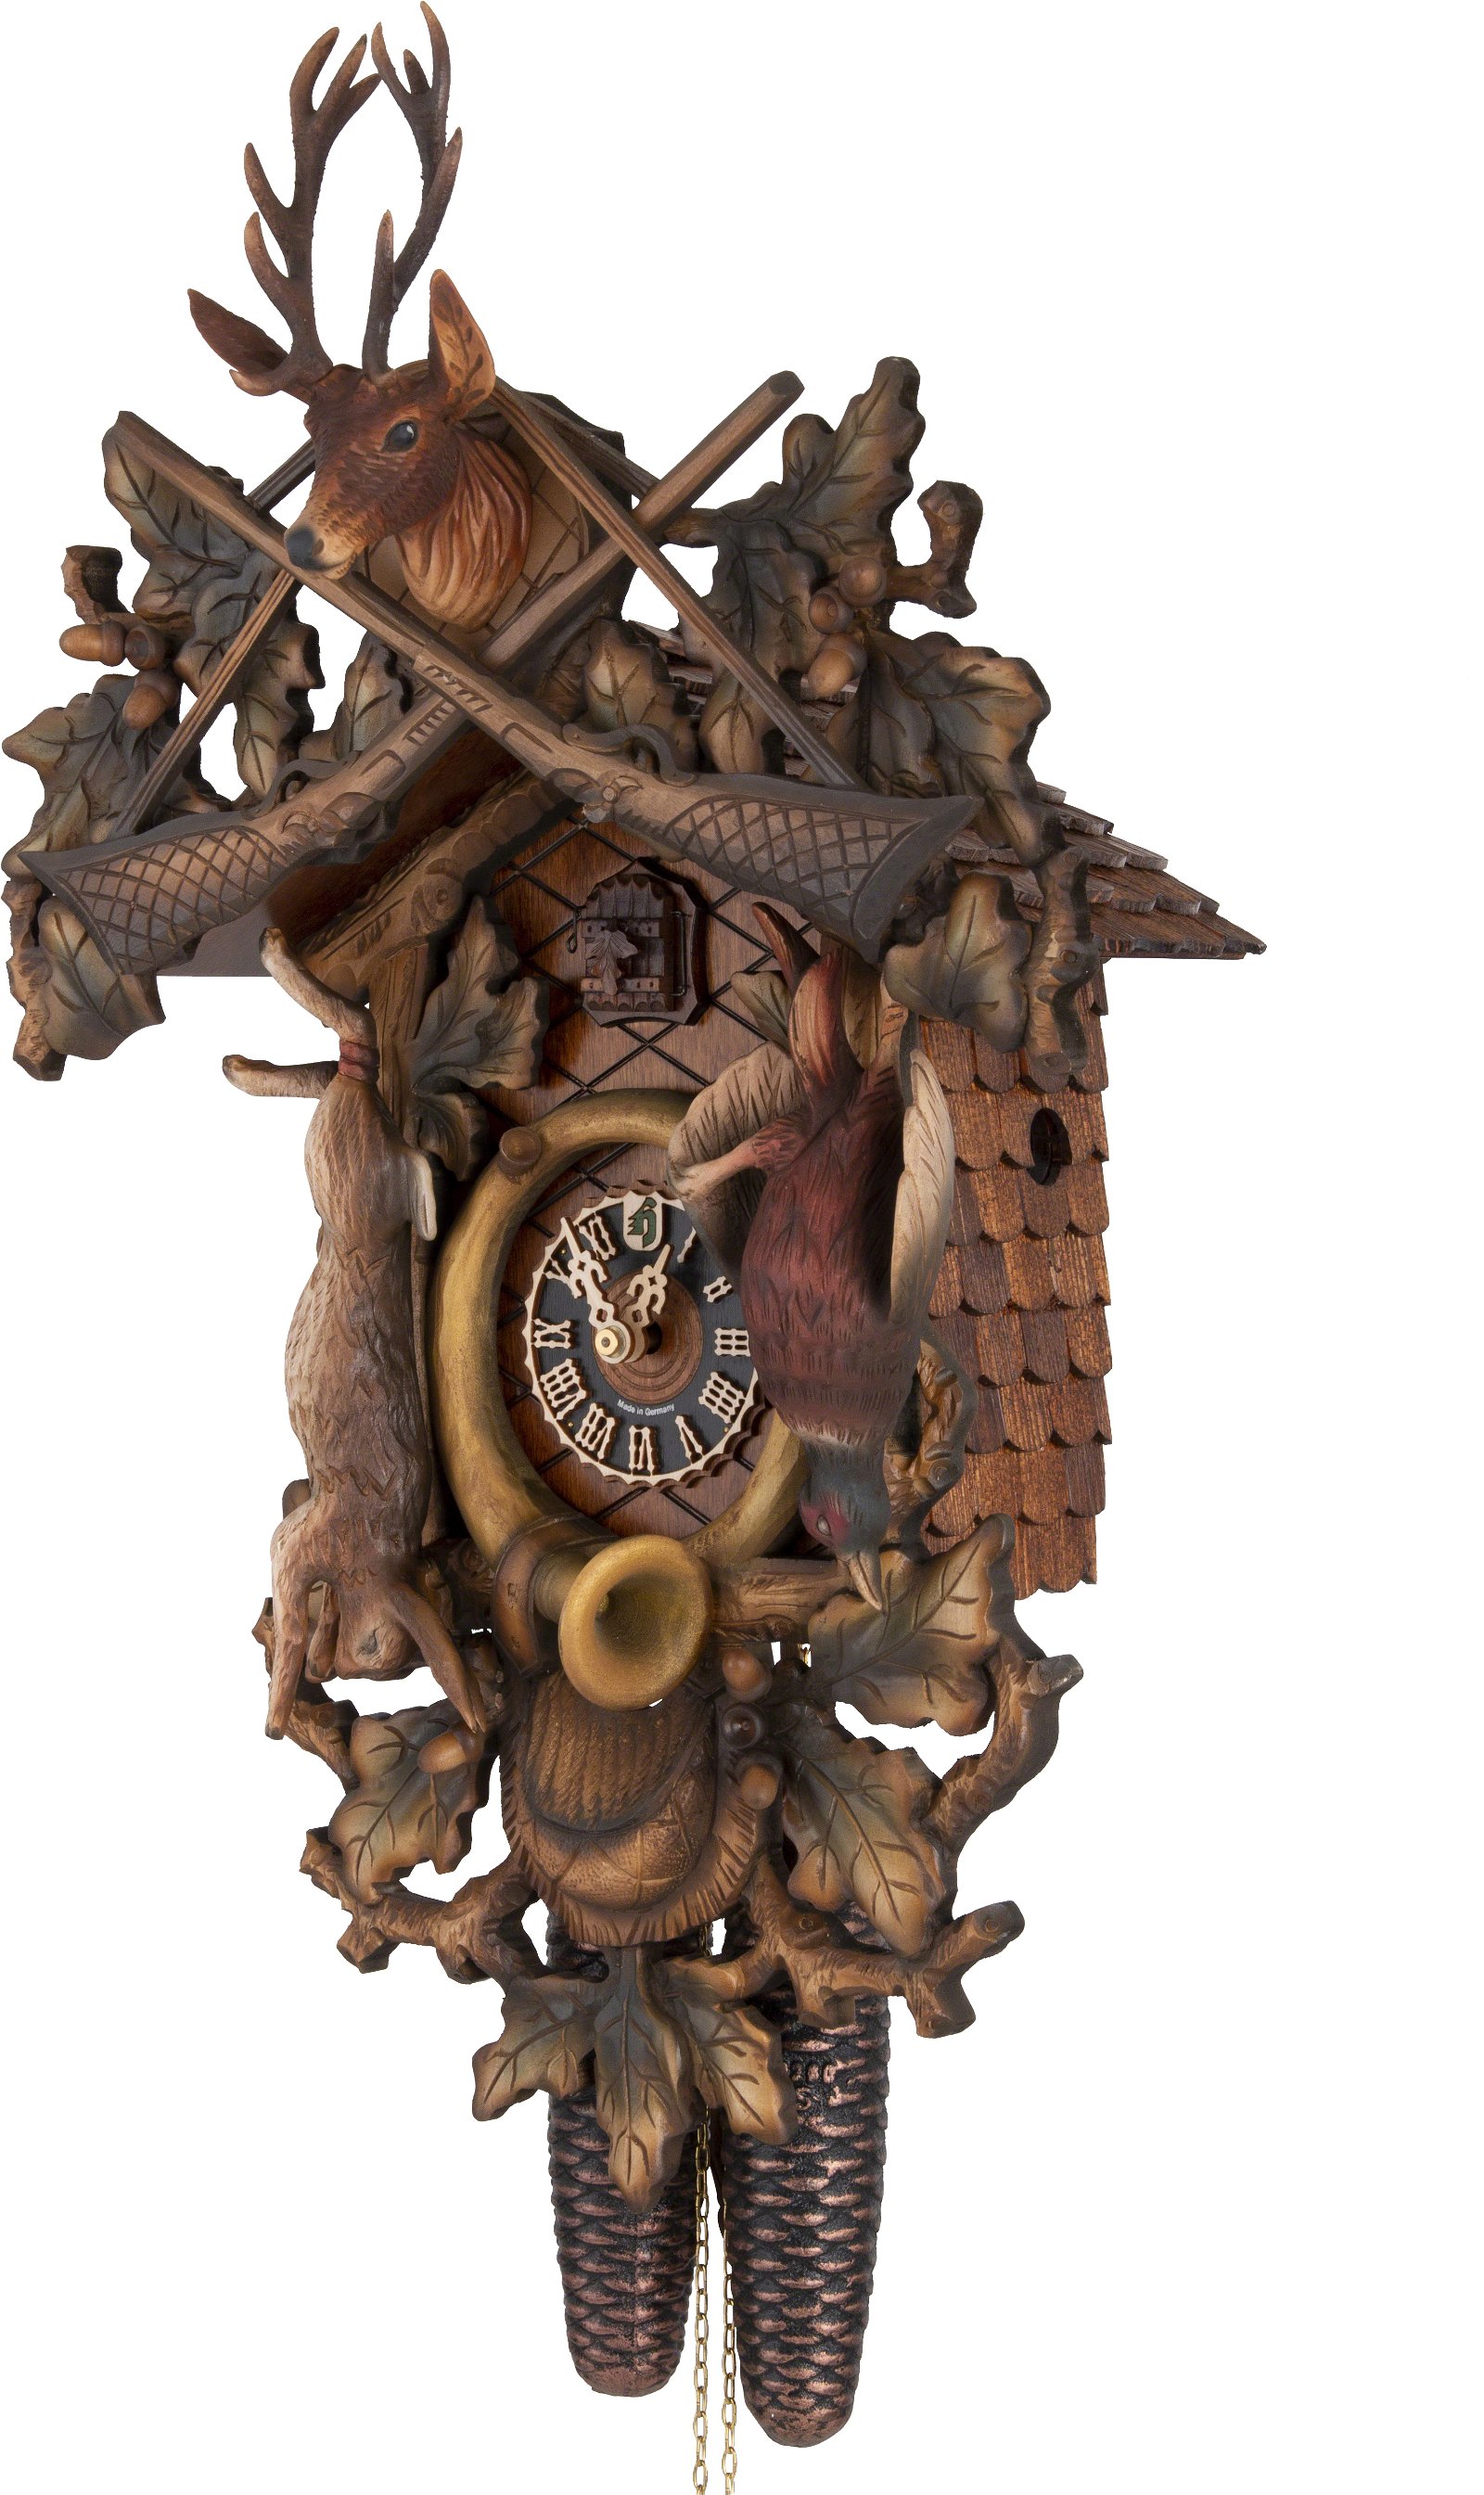 Horloge coucou traditionnelle mouvement 8 jours 62cm de Hönes